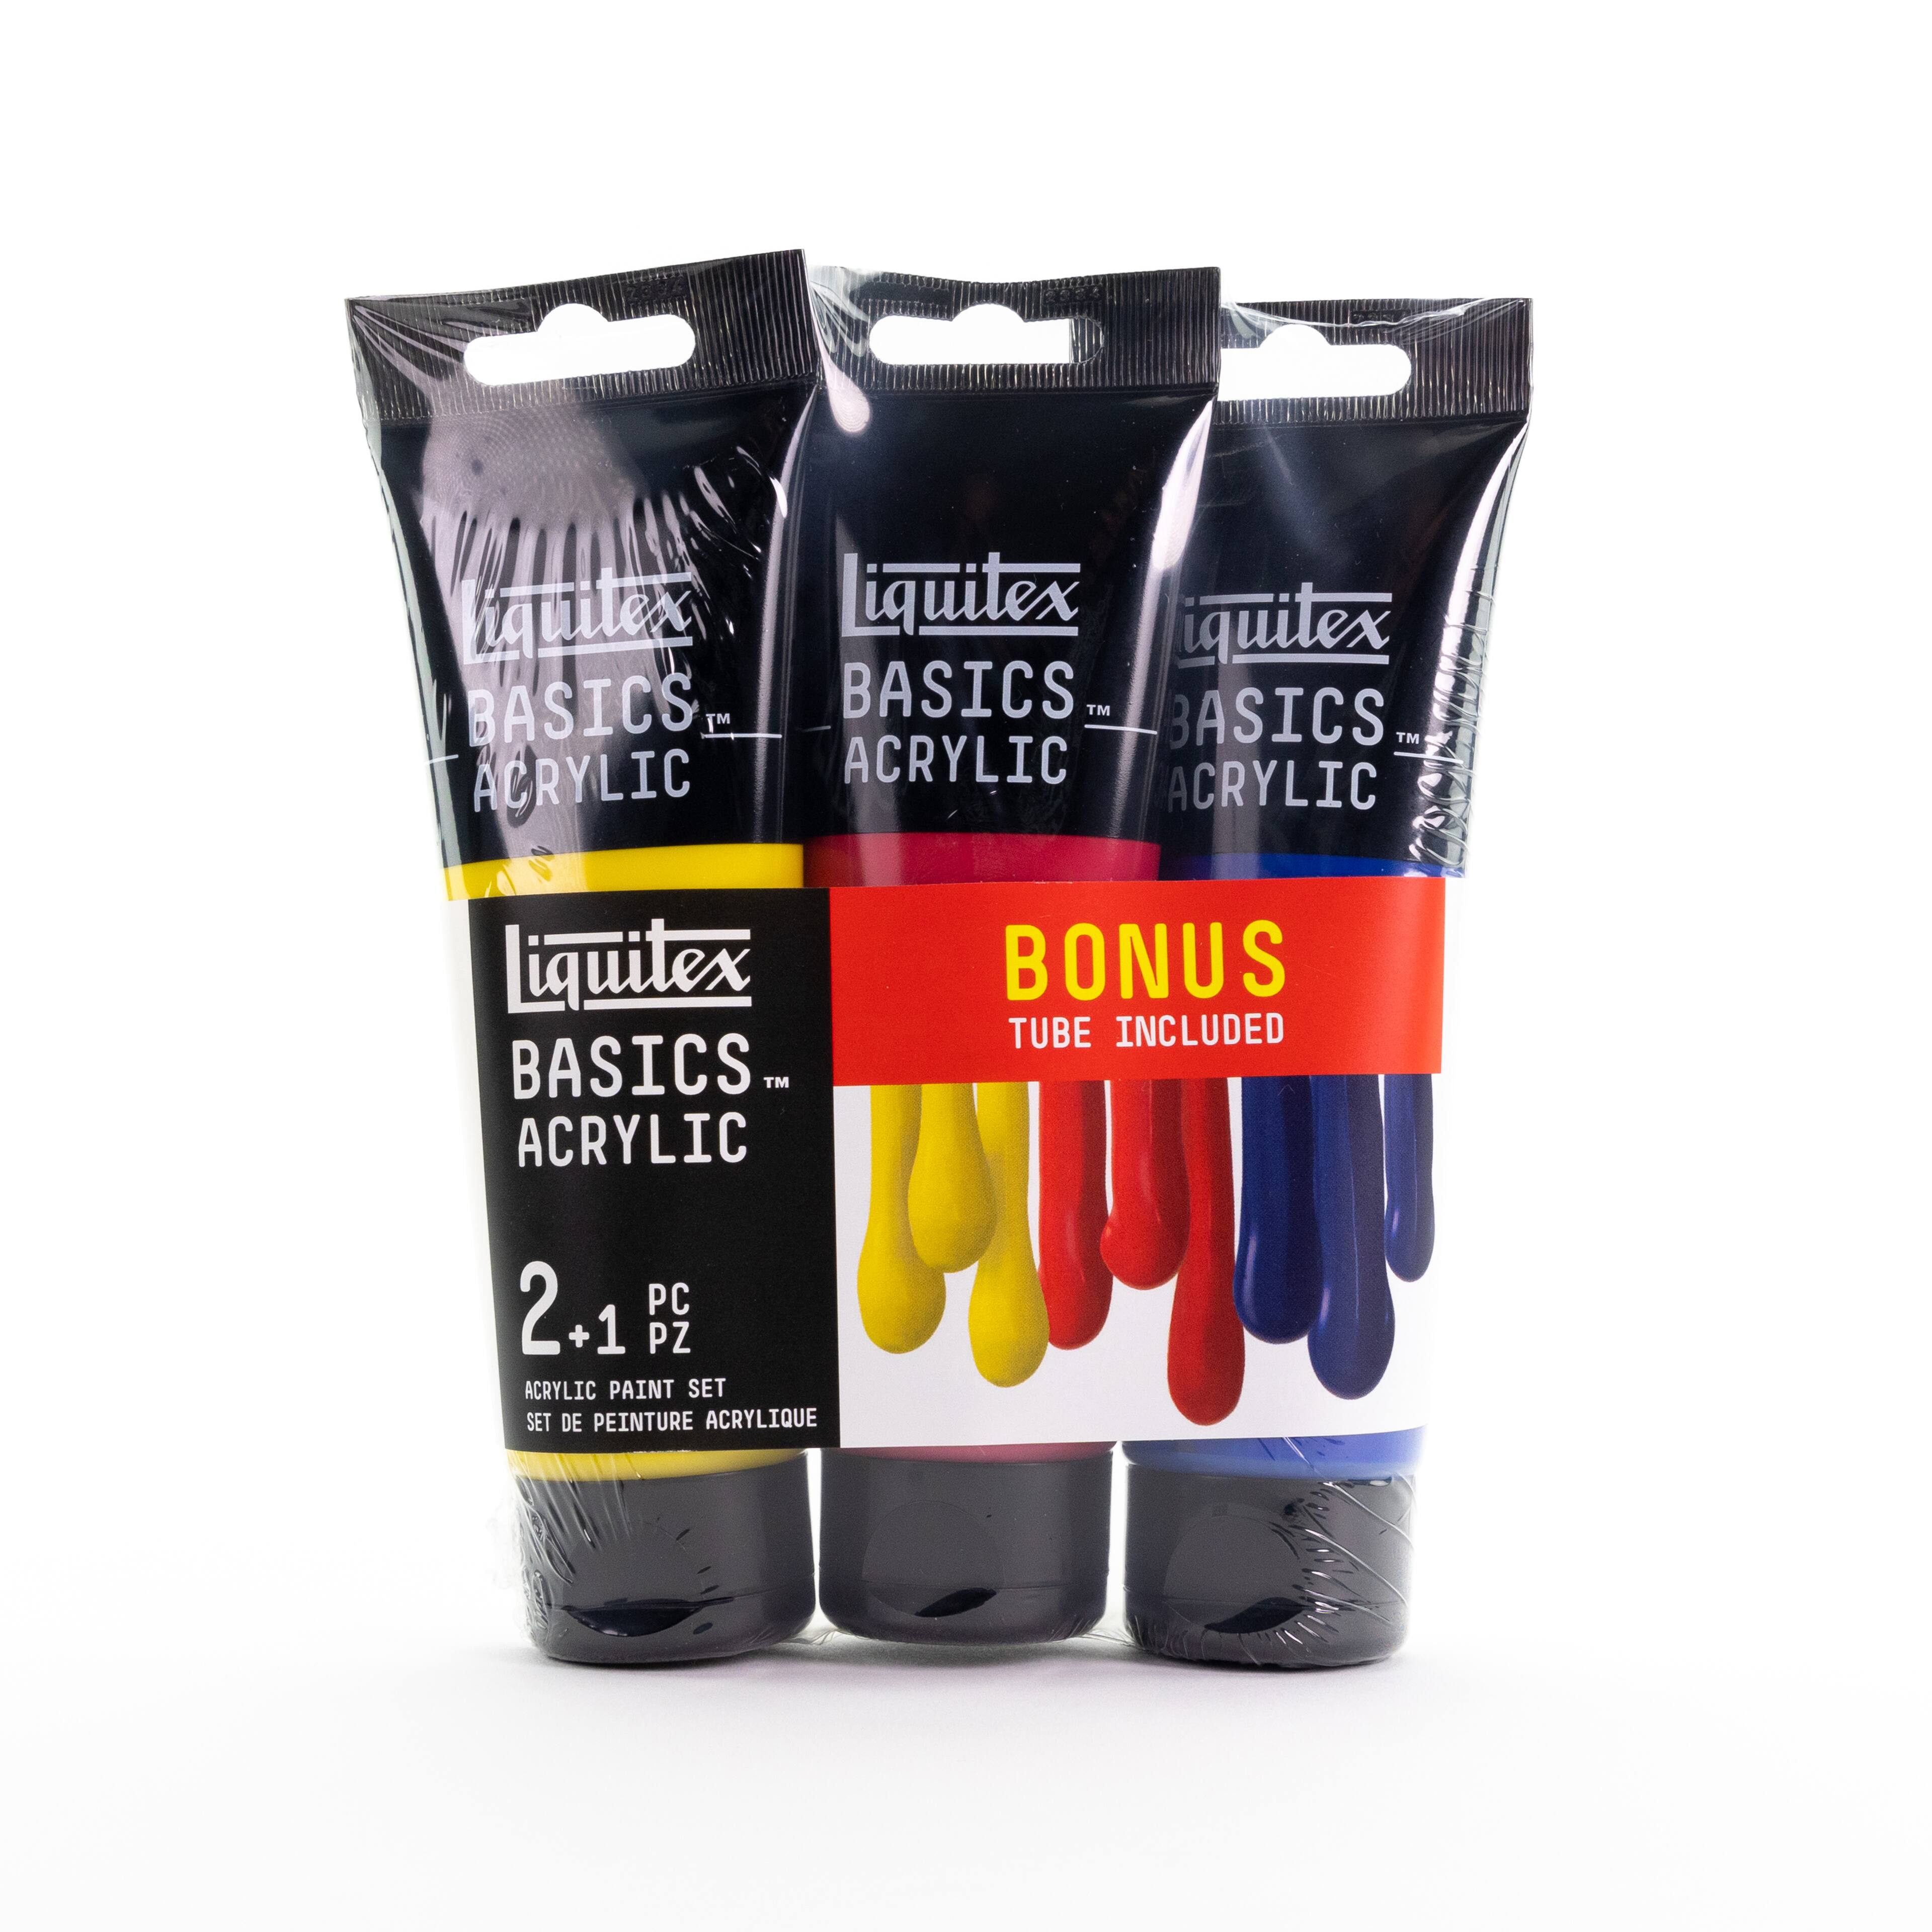 REVIEW: Liquitex Basics Acrylic Paints - Part One 